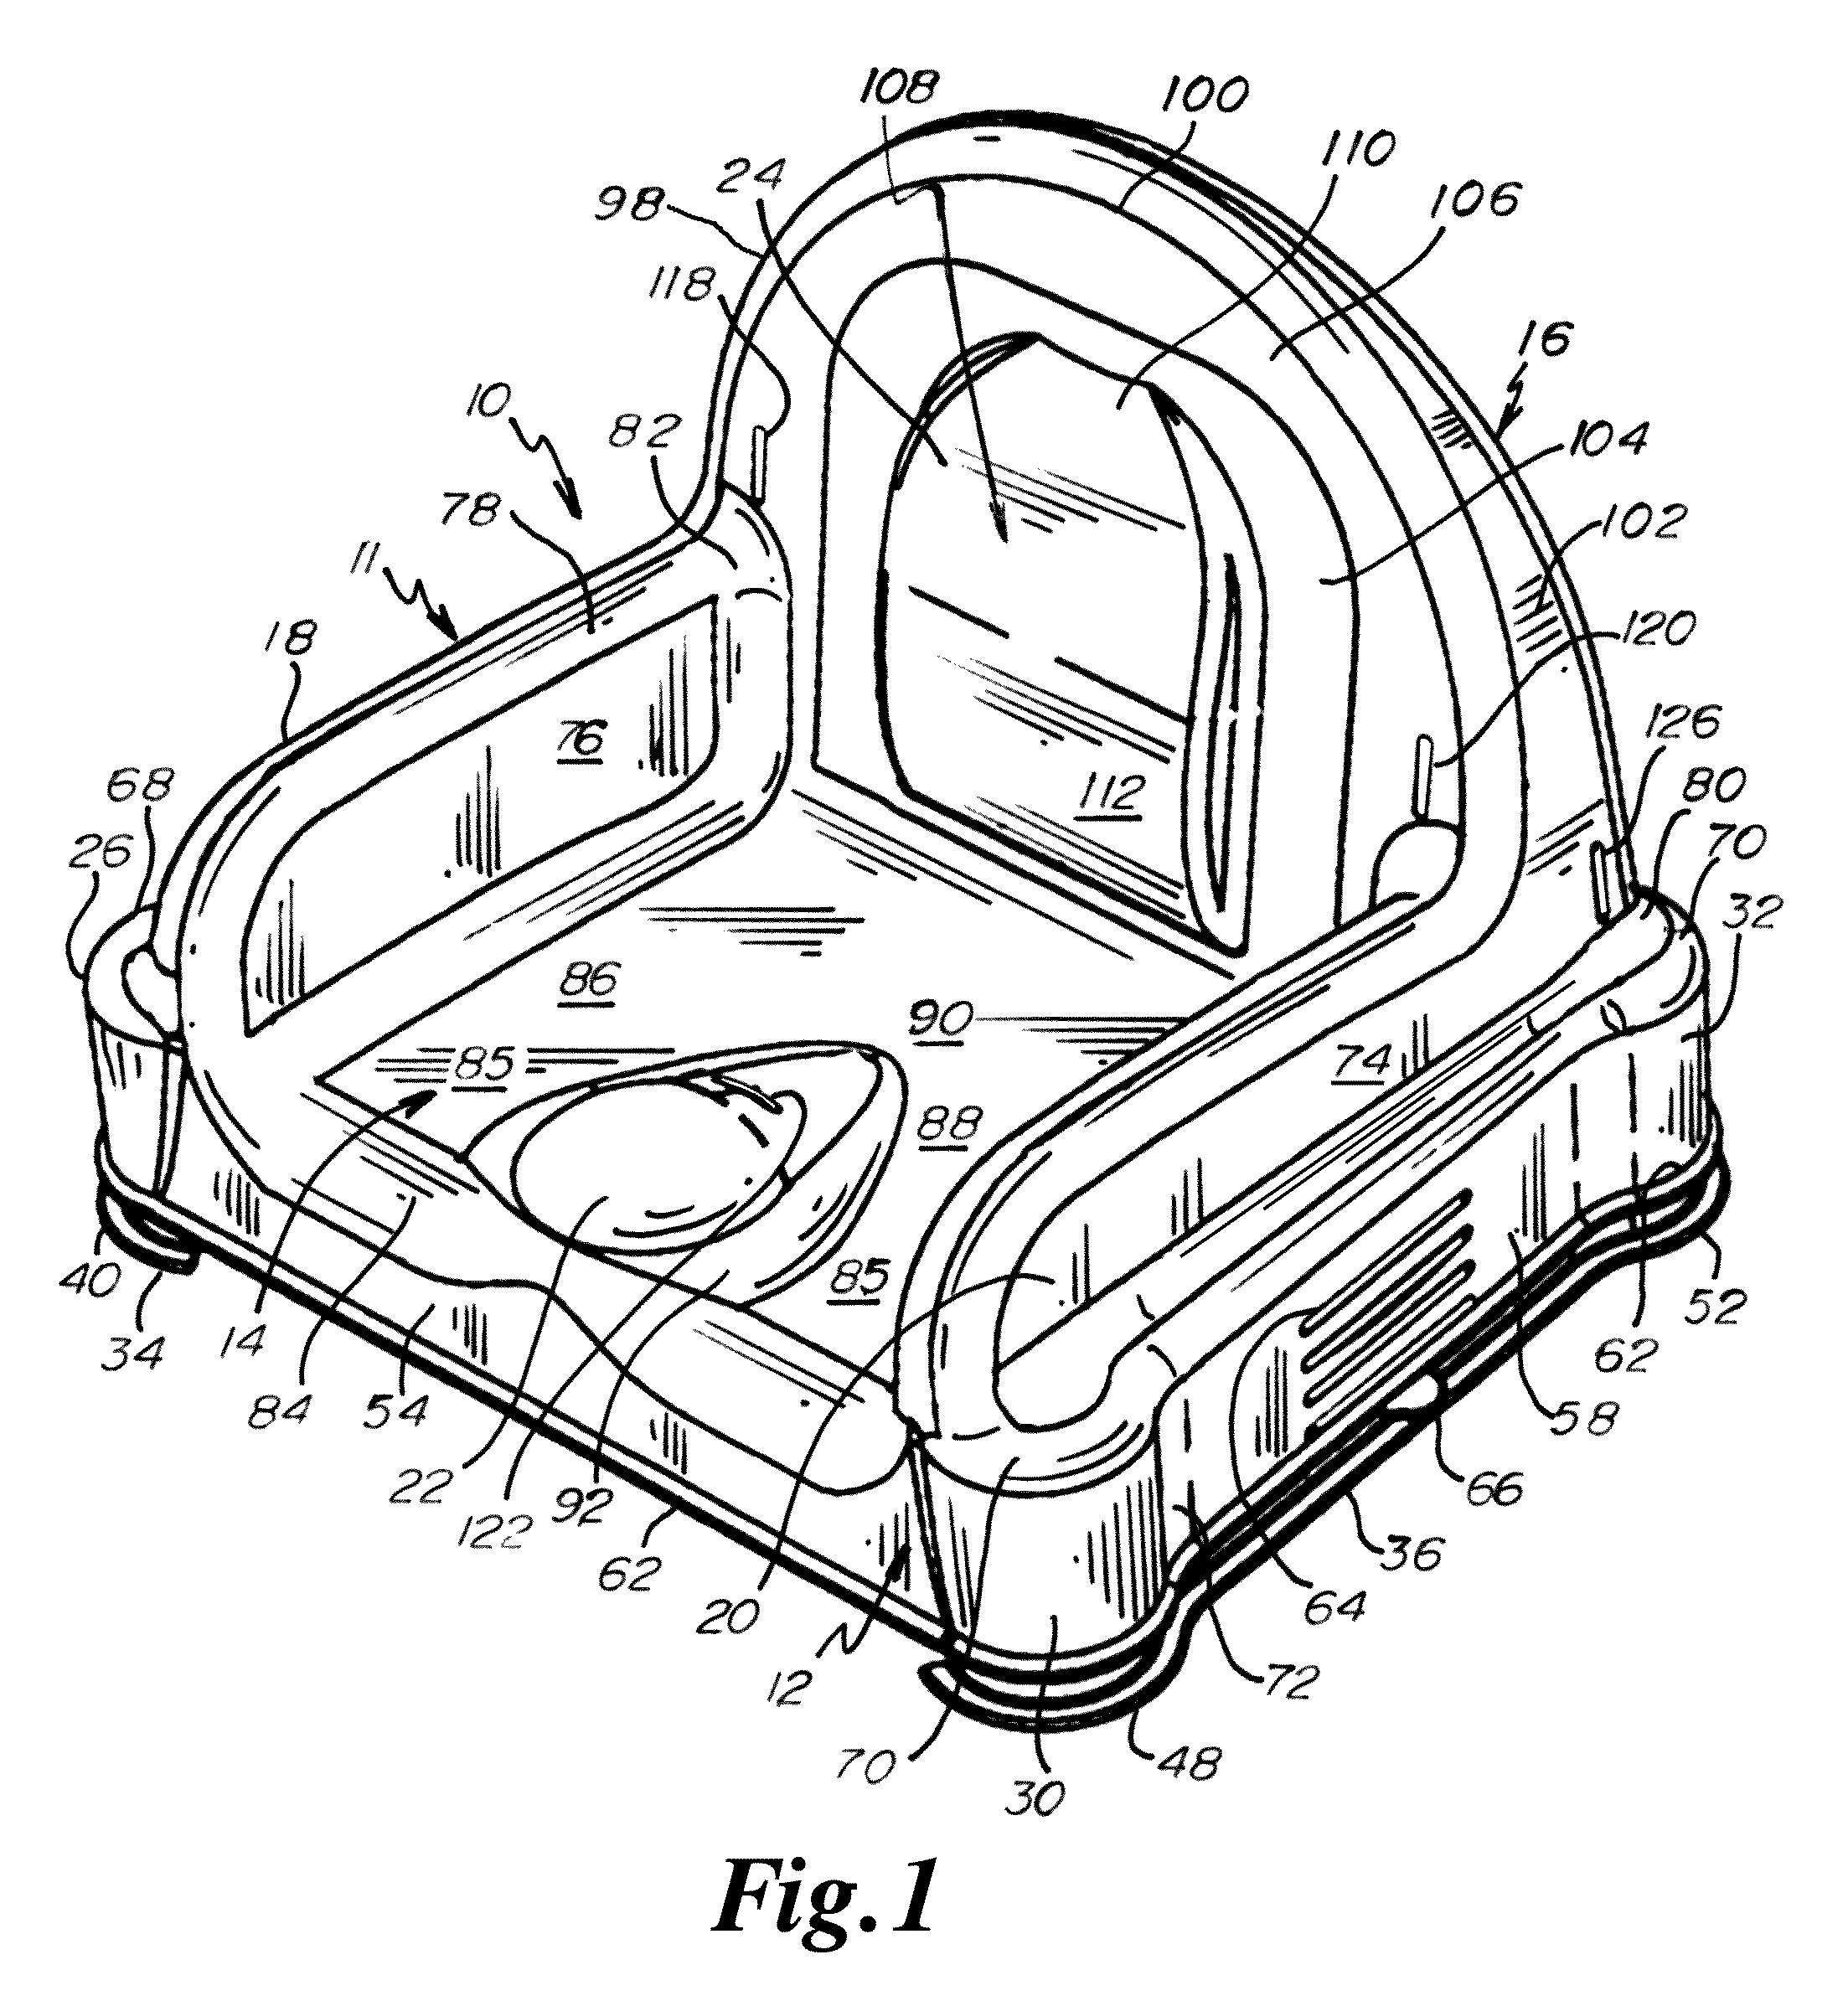 Plastic booster seat apparatus